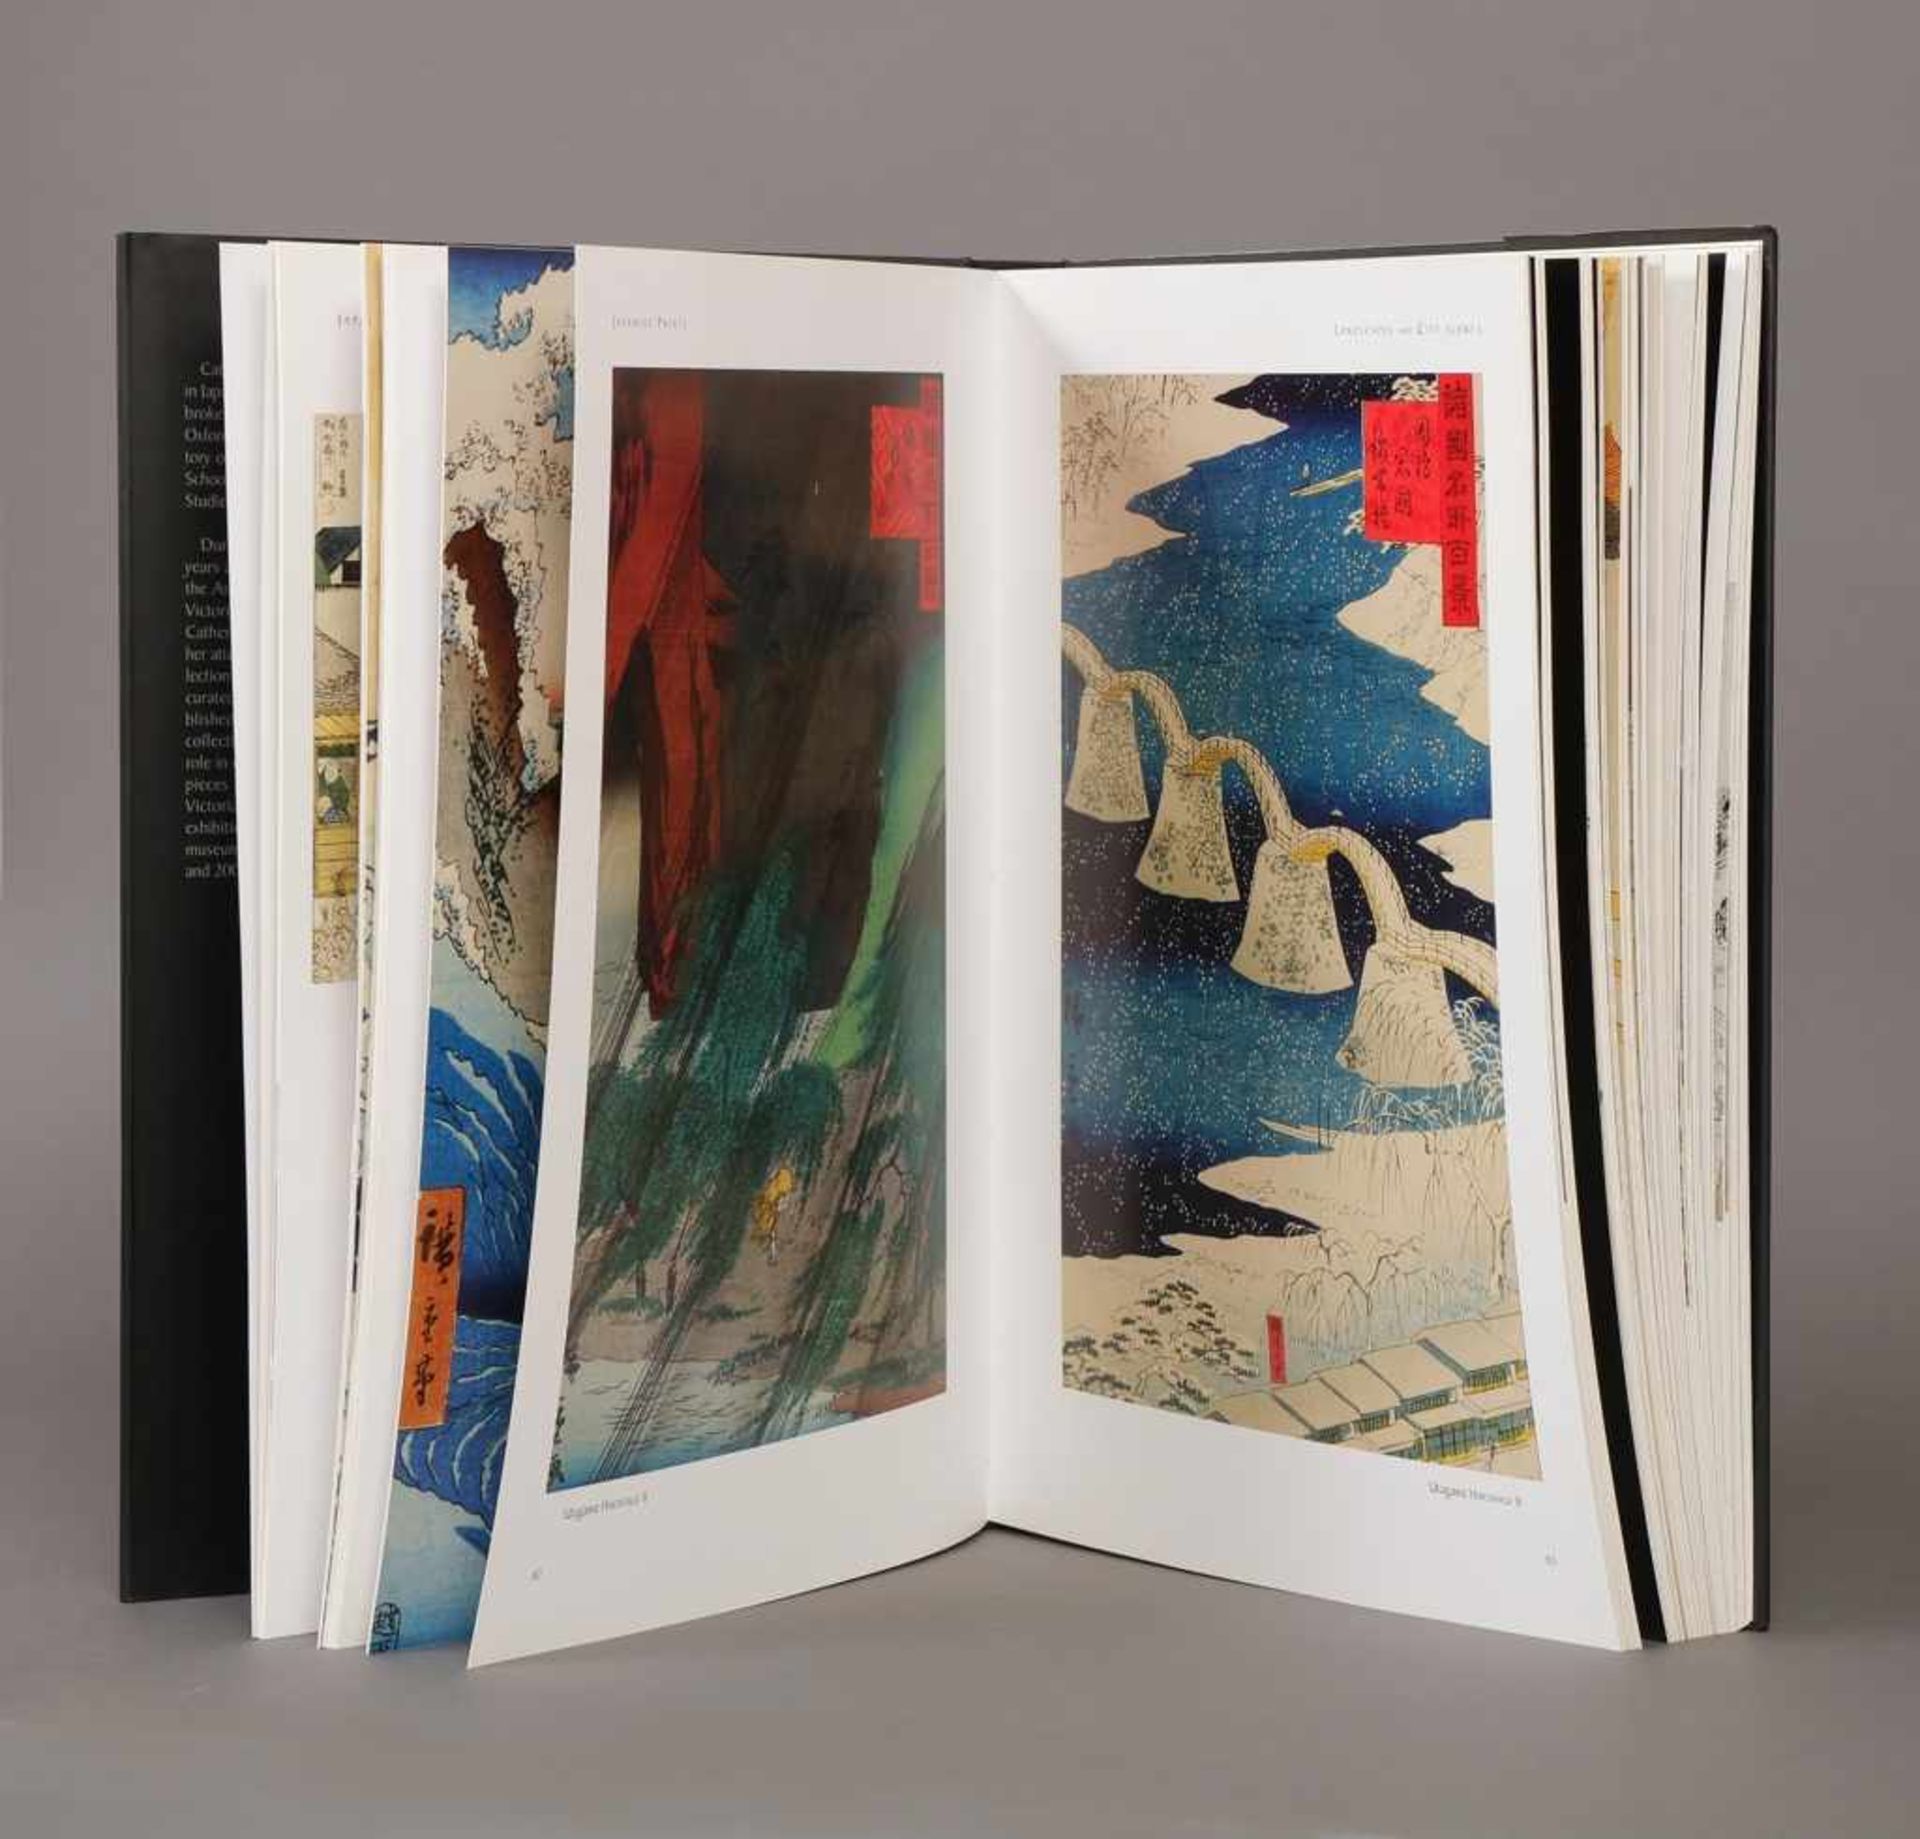 Buch ¨Japanese Prints¨ Catherine David, Verlag Place des Victoires, 2010, dunkler Leineneinband, - Bild 2 aus 2